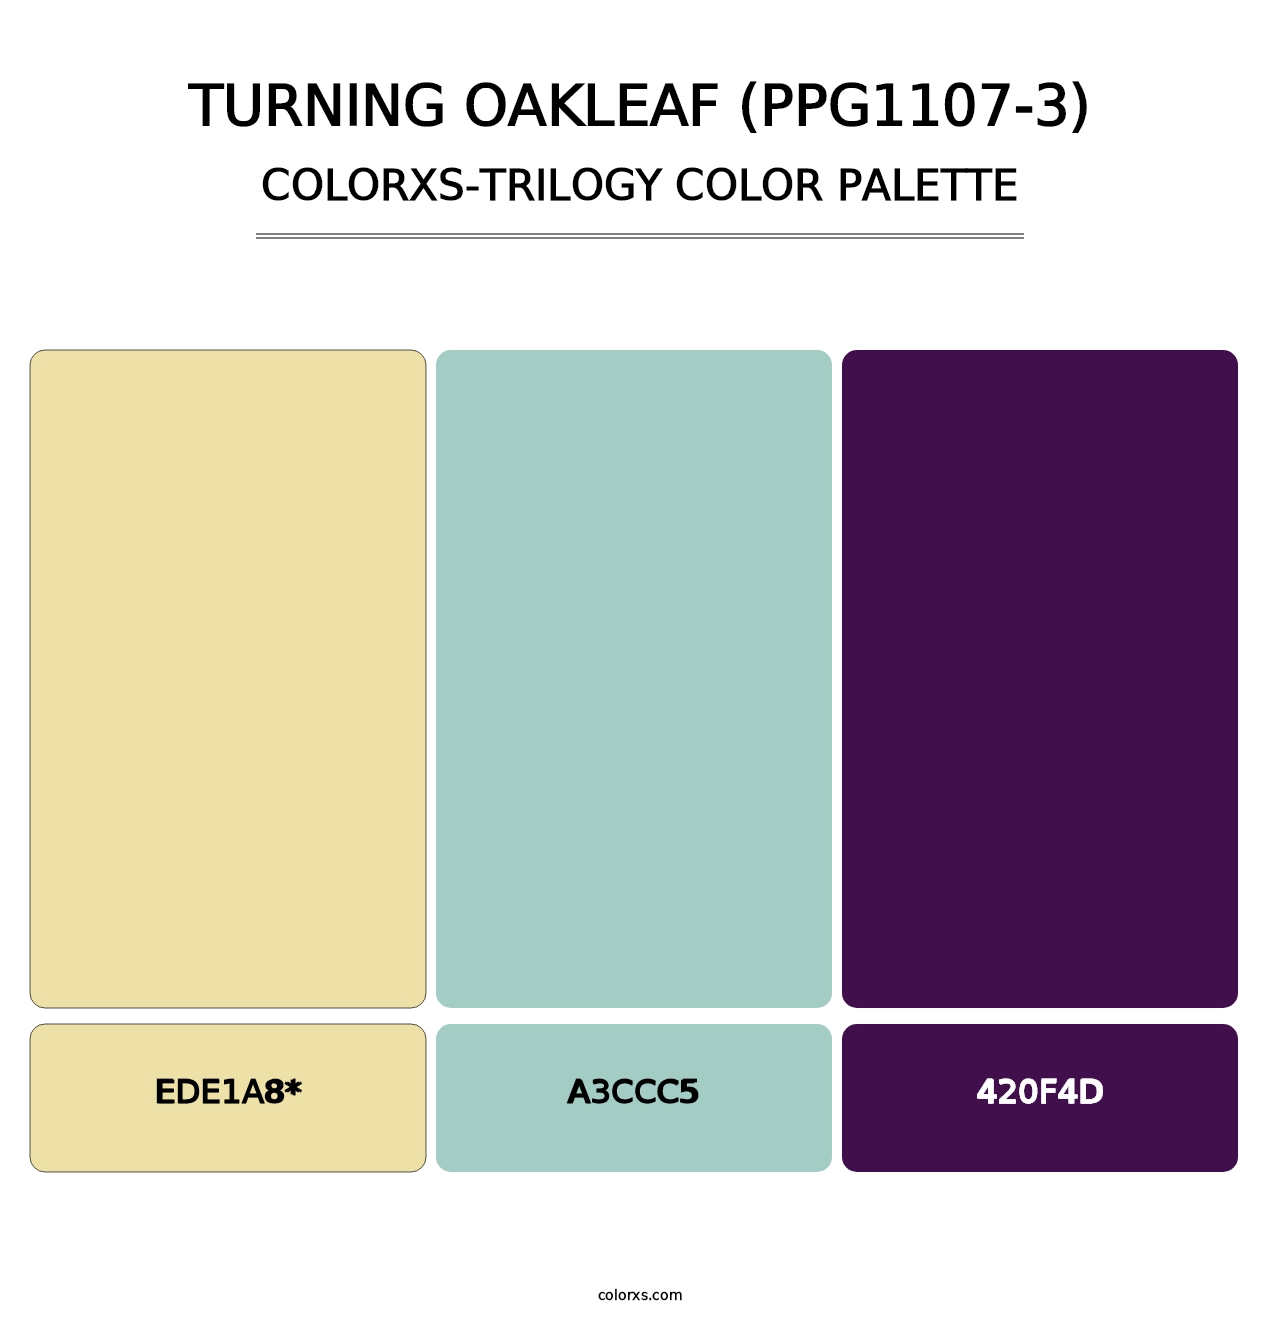 Turning Oakleaf (PPG1107-3) - Colorxs Trilogy Palette